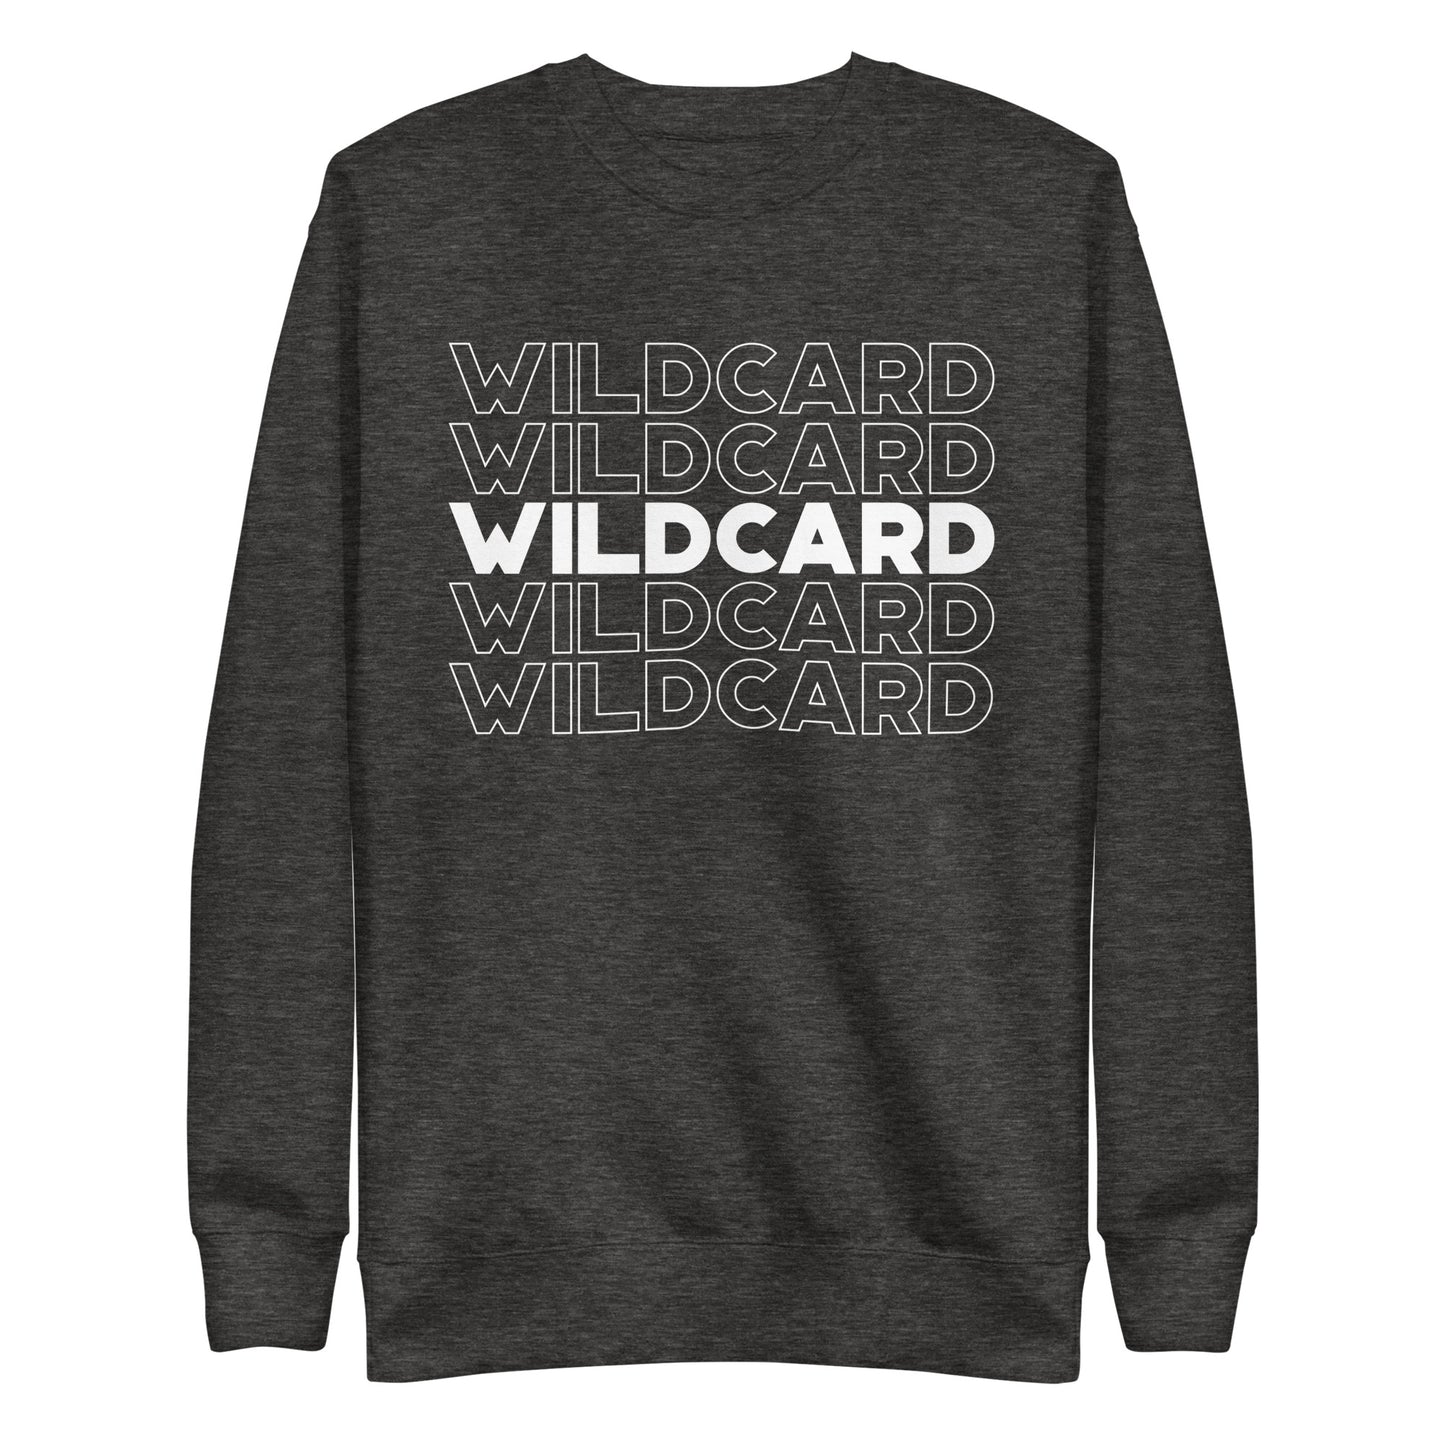 Wildcard Wildcard Wildcard Unisex Premium Sweatshirt